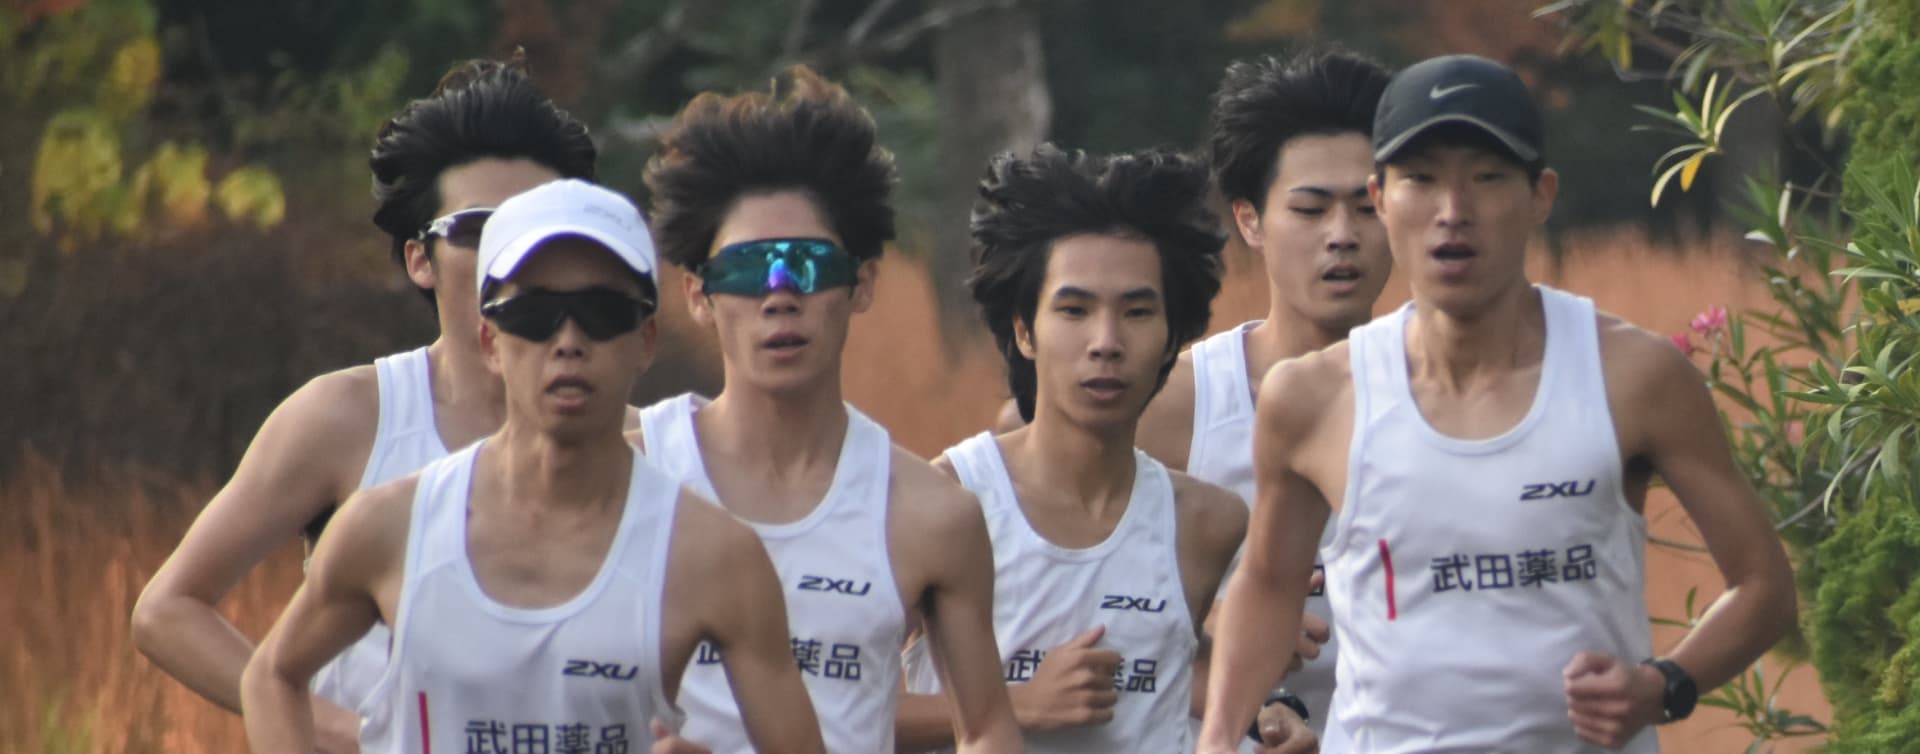 武田薬品社員たちがマラソン練習で走っている